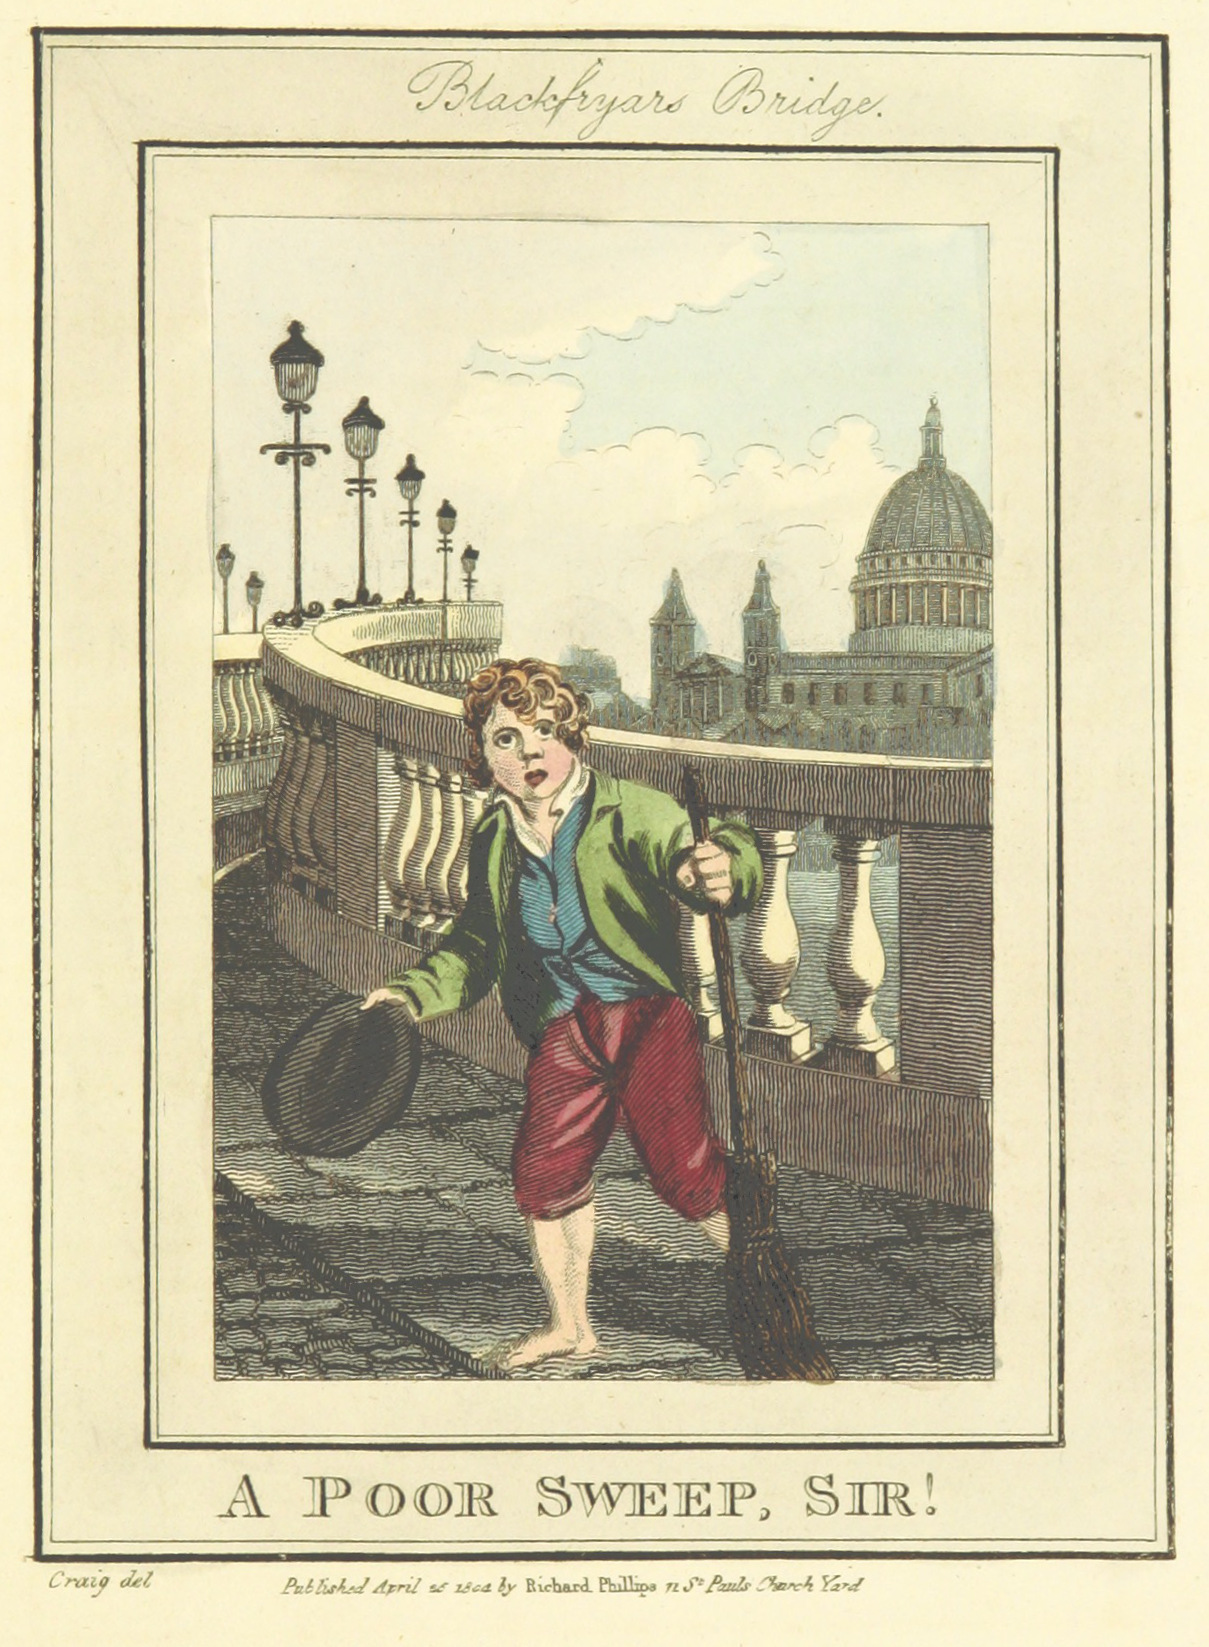 Phillips(1804)_p641_-_Blackfriars_Bridge_-_A_Poor_Sweep_Sir!